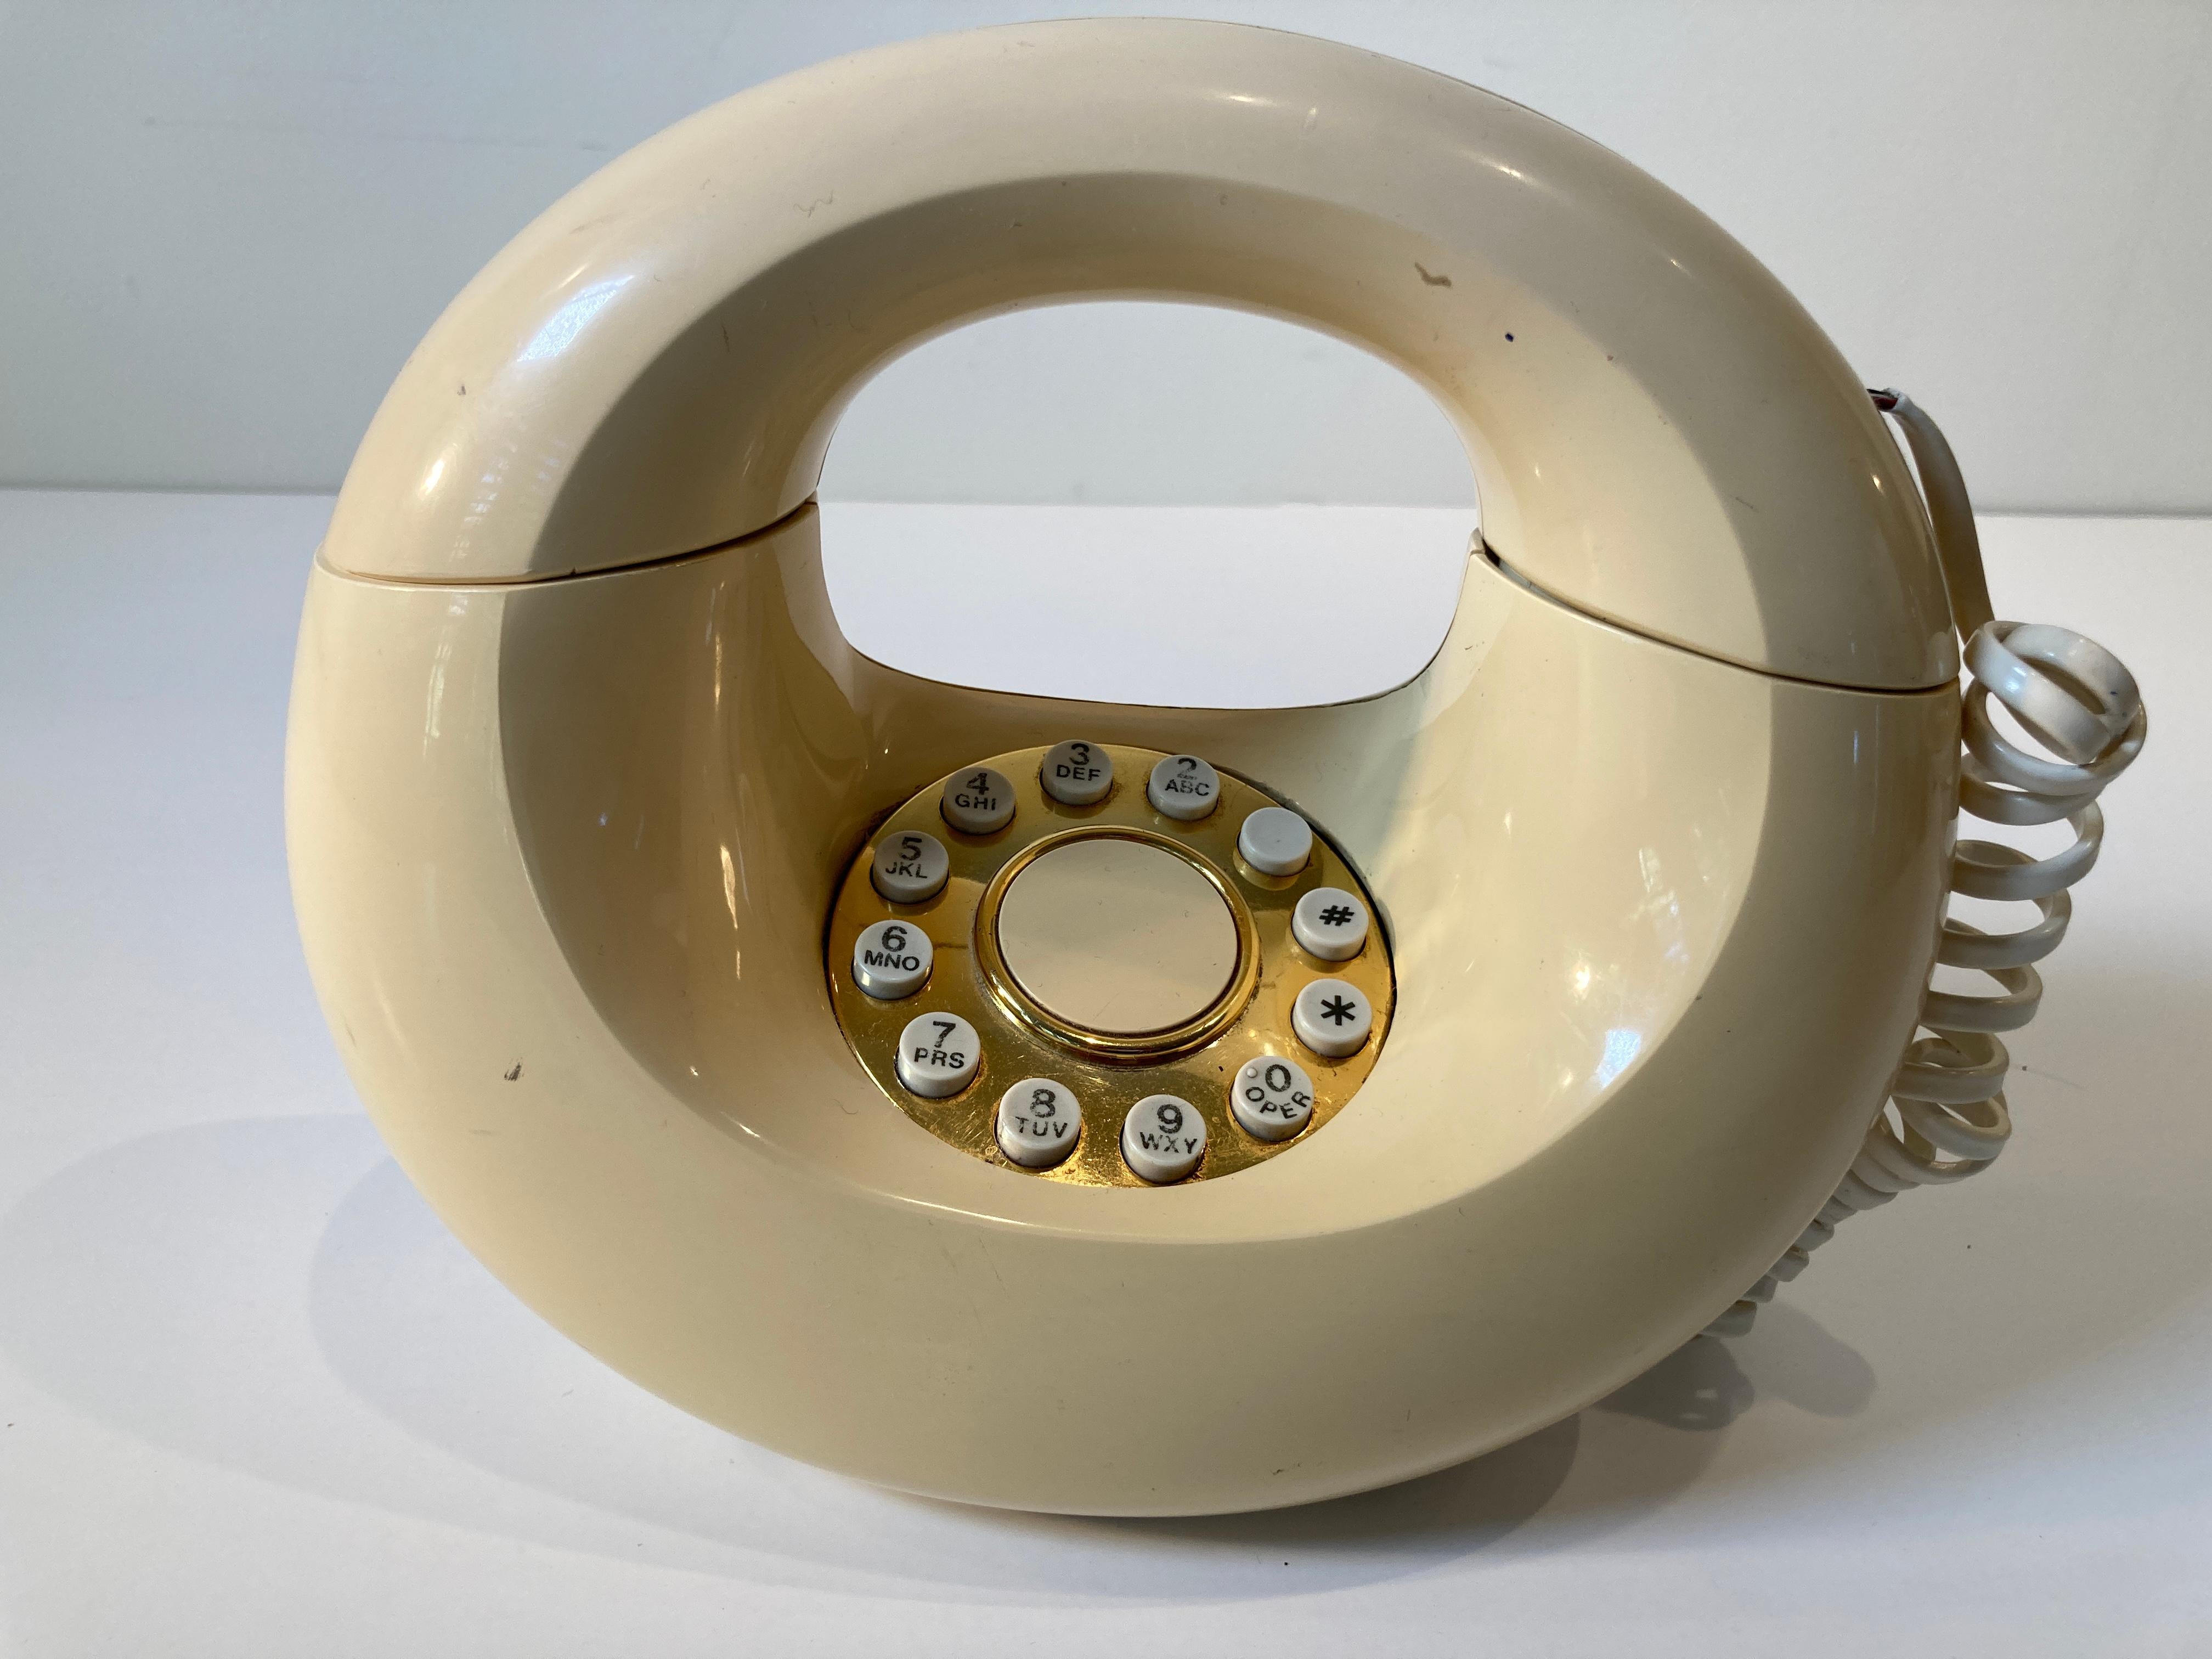 70s phone